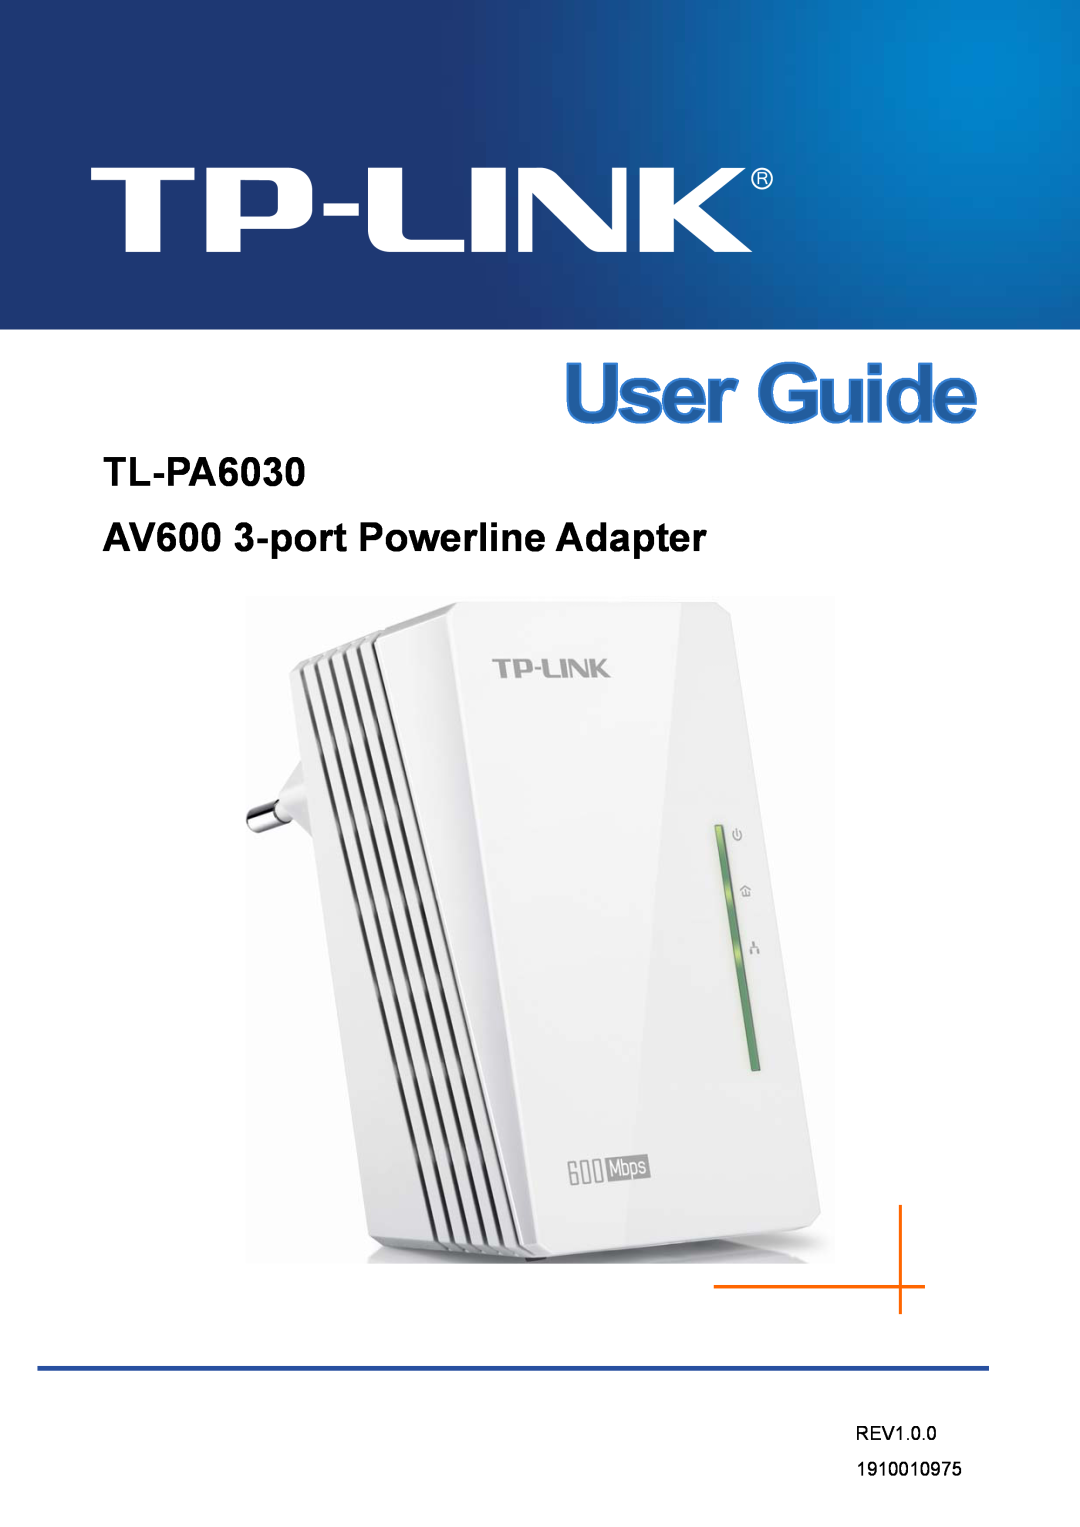 TP-Link manual TL-PA6030 AV600 3-port Powerline Adapter, REV1.0.0 1910010975 